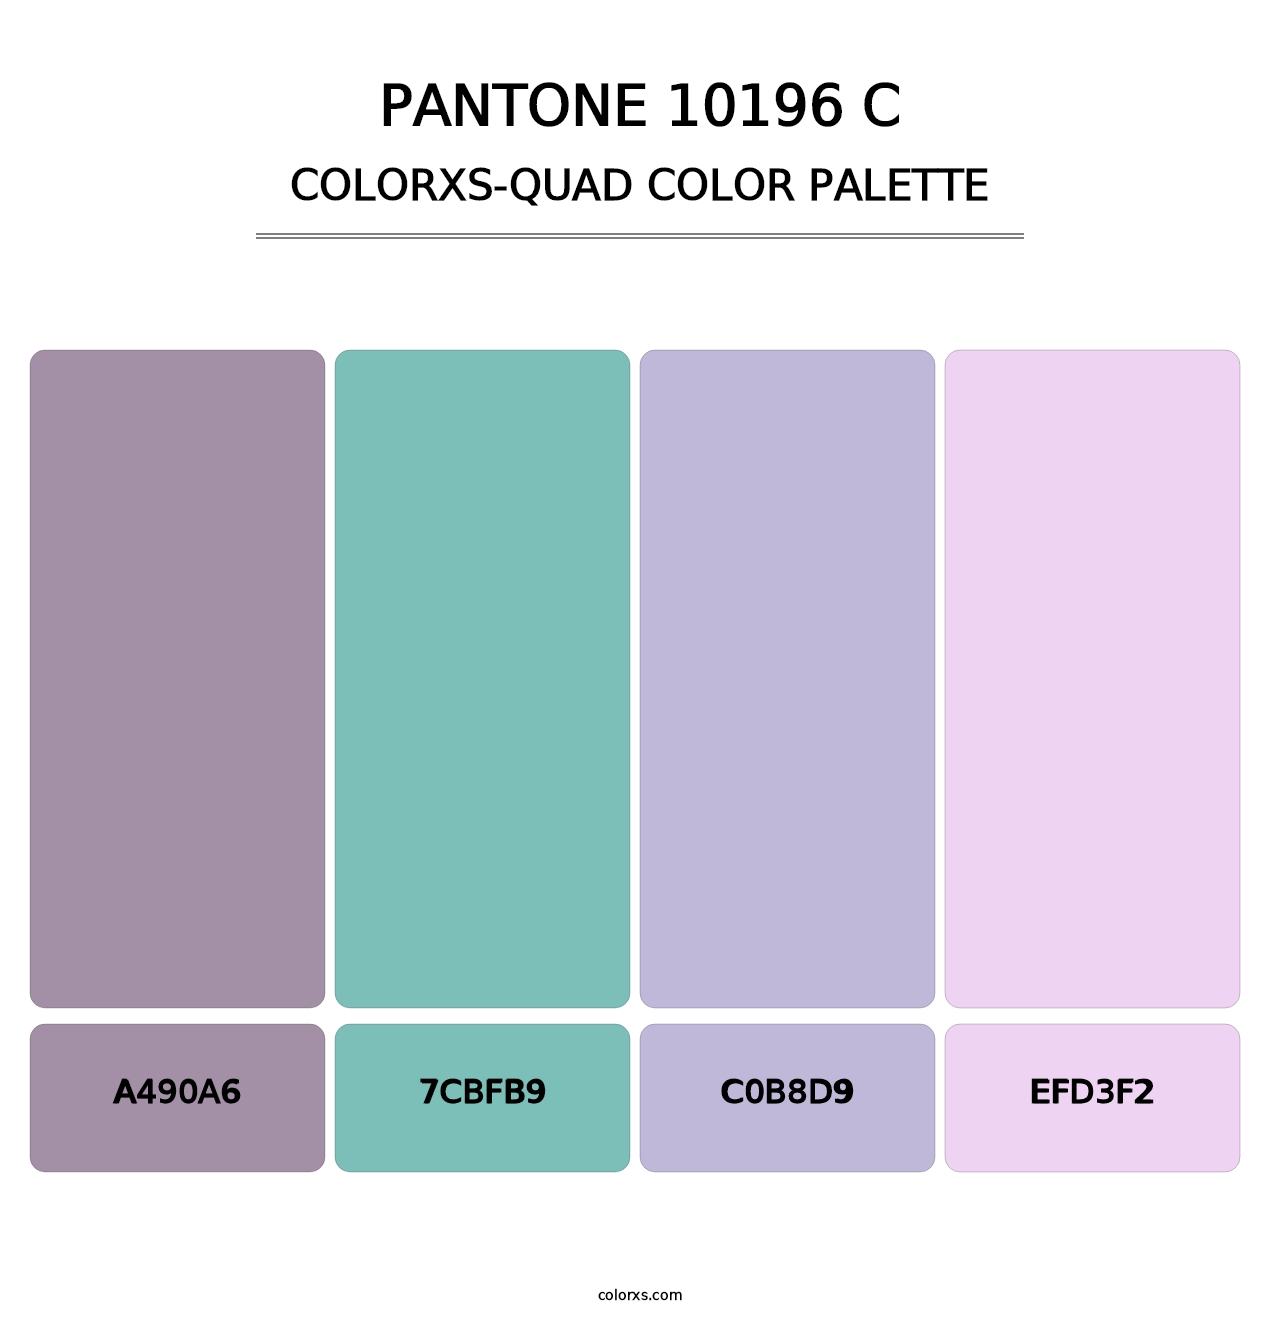 PANTONE 10196 C - Colorxs Quad Palette